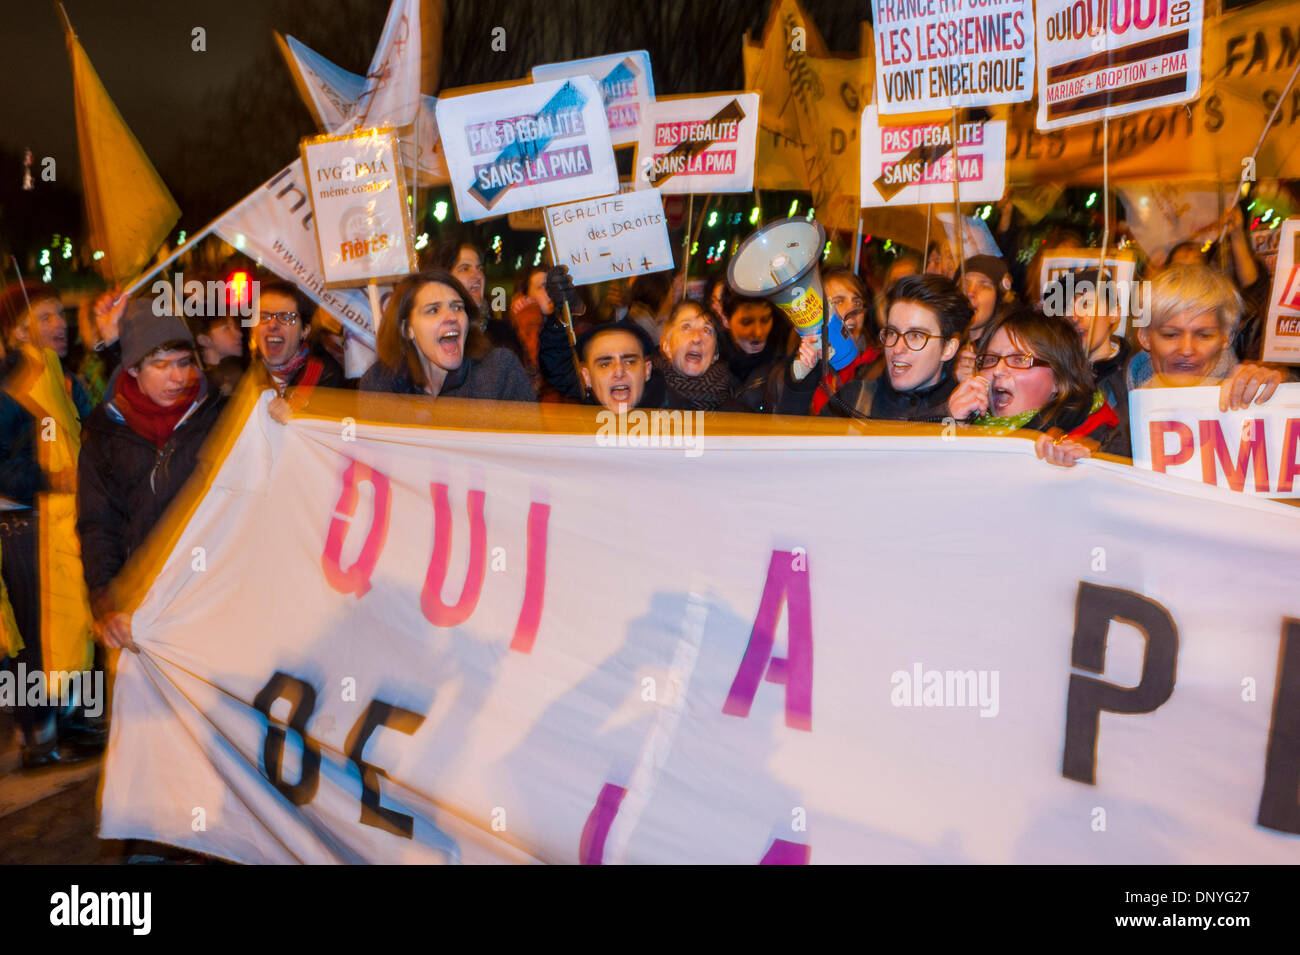 París, Francia. Manifestación Pública, Grupos de Activismo LGBT Francés, protestando contra la negativa del Gobierno a Legalizar M.A.P. (Procreación asistida médicamente) (P.M.A). (Derechos de Inseminación Artificial) Mujeres que sostienen señales de protesta, protesta lgbt Foto de stock